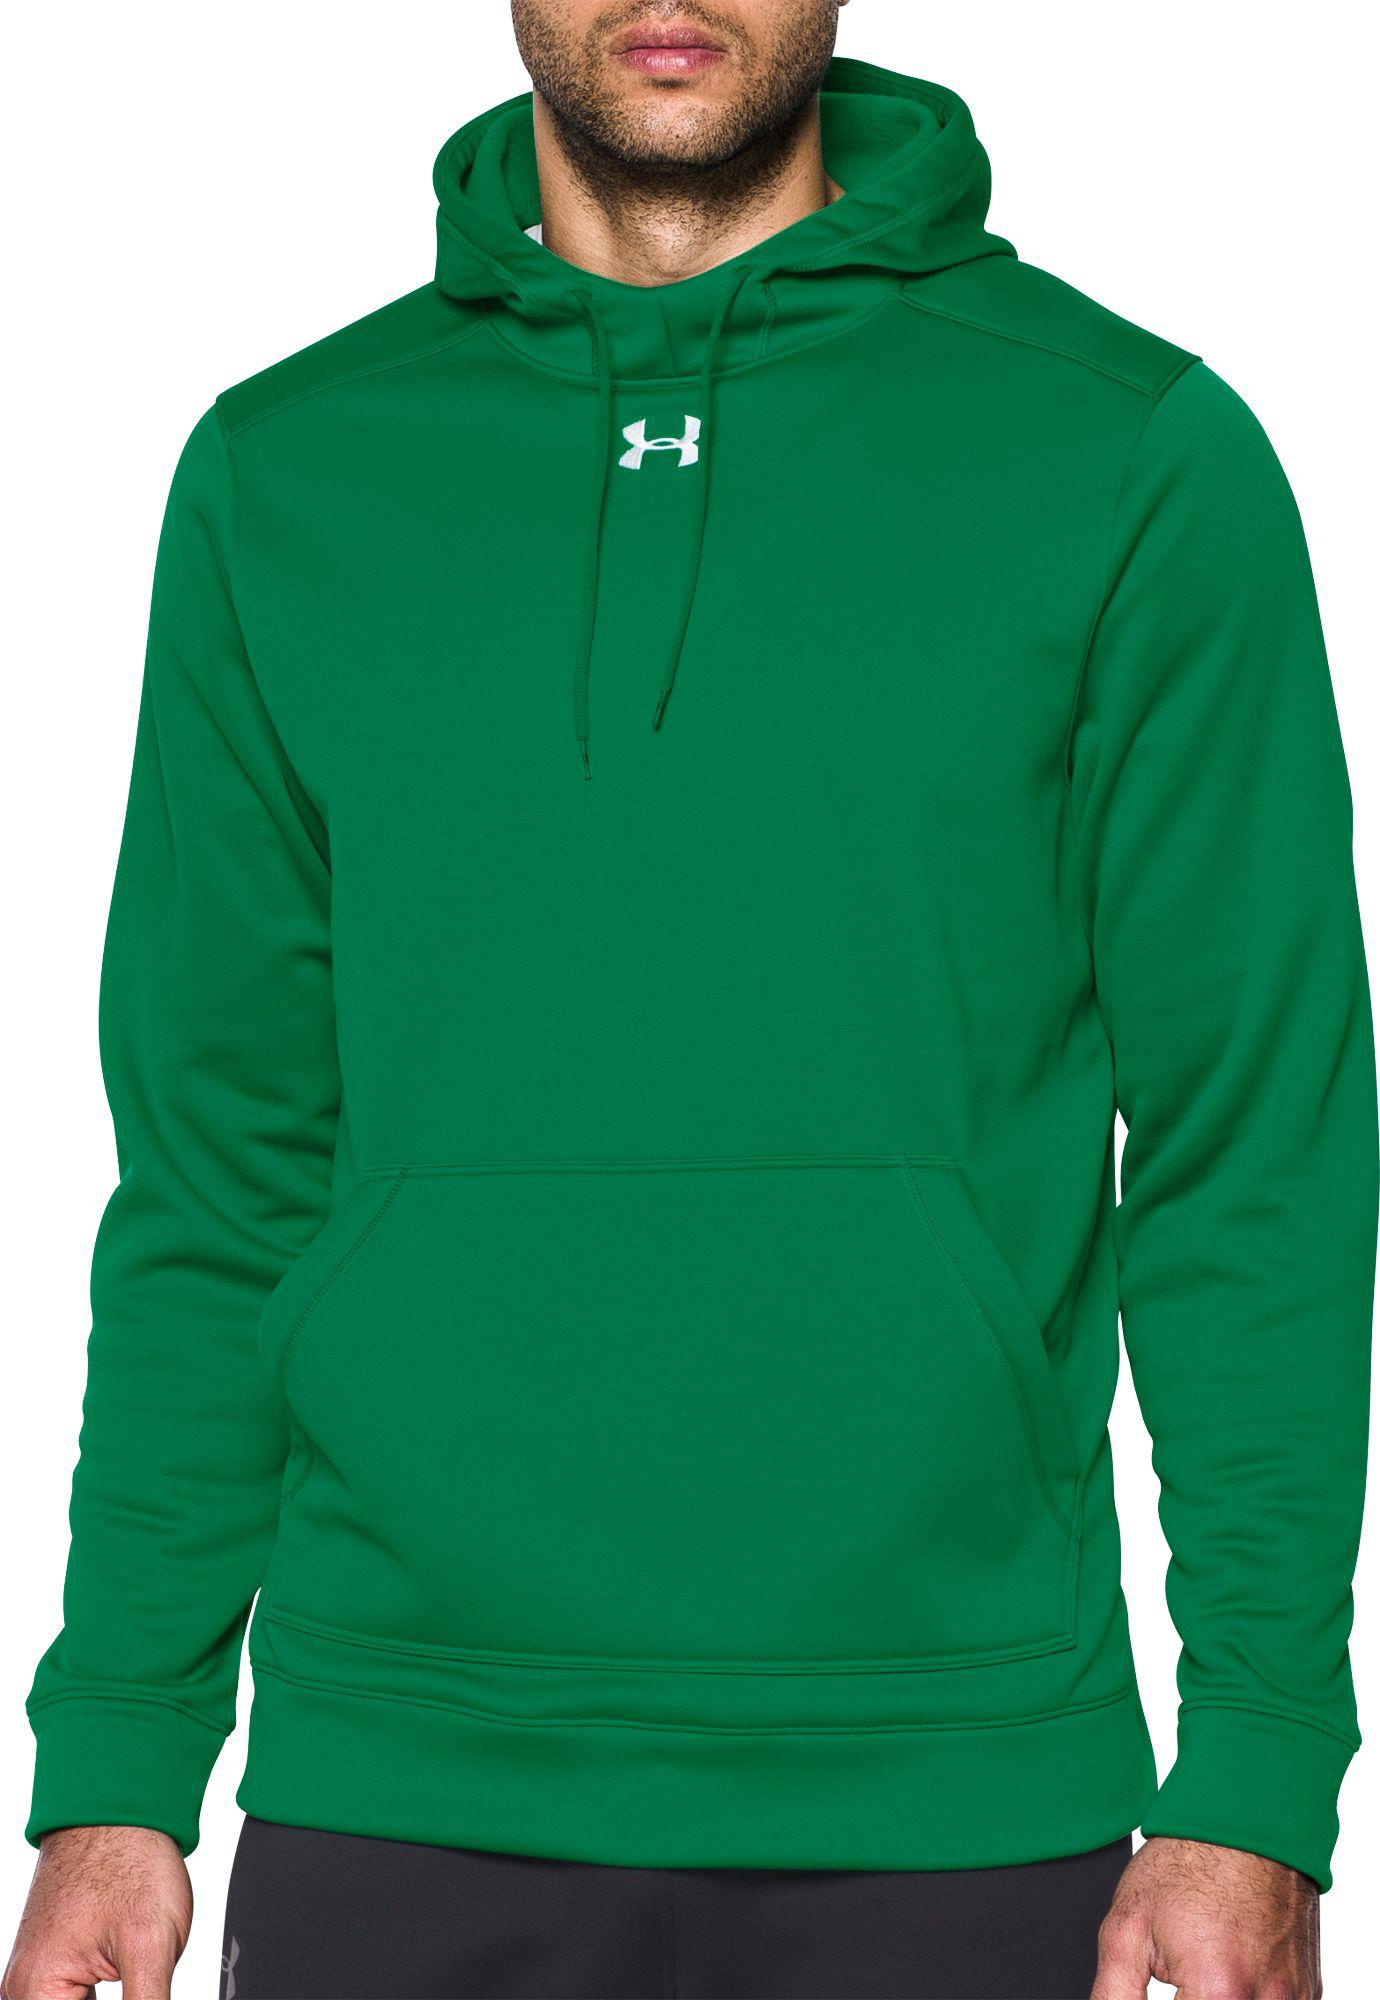 green under armor hoodie